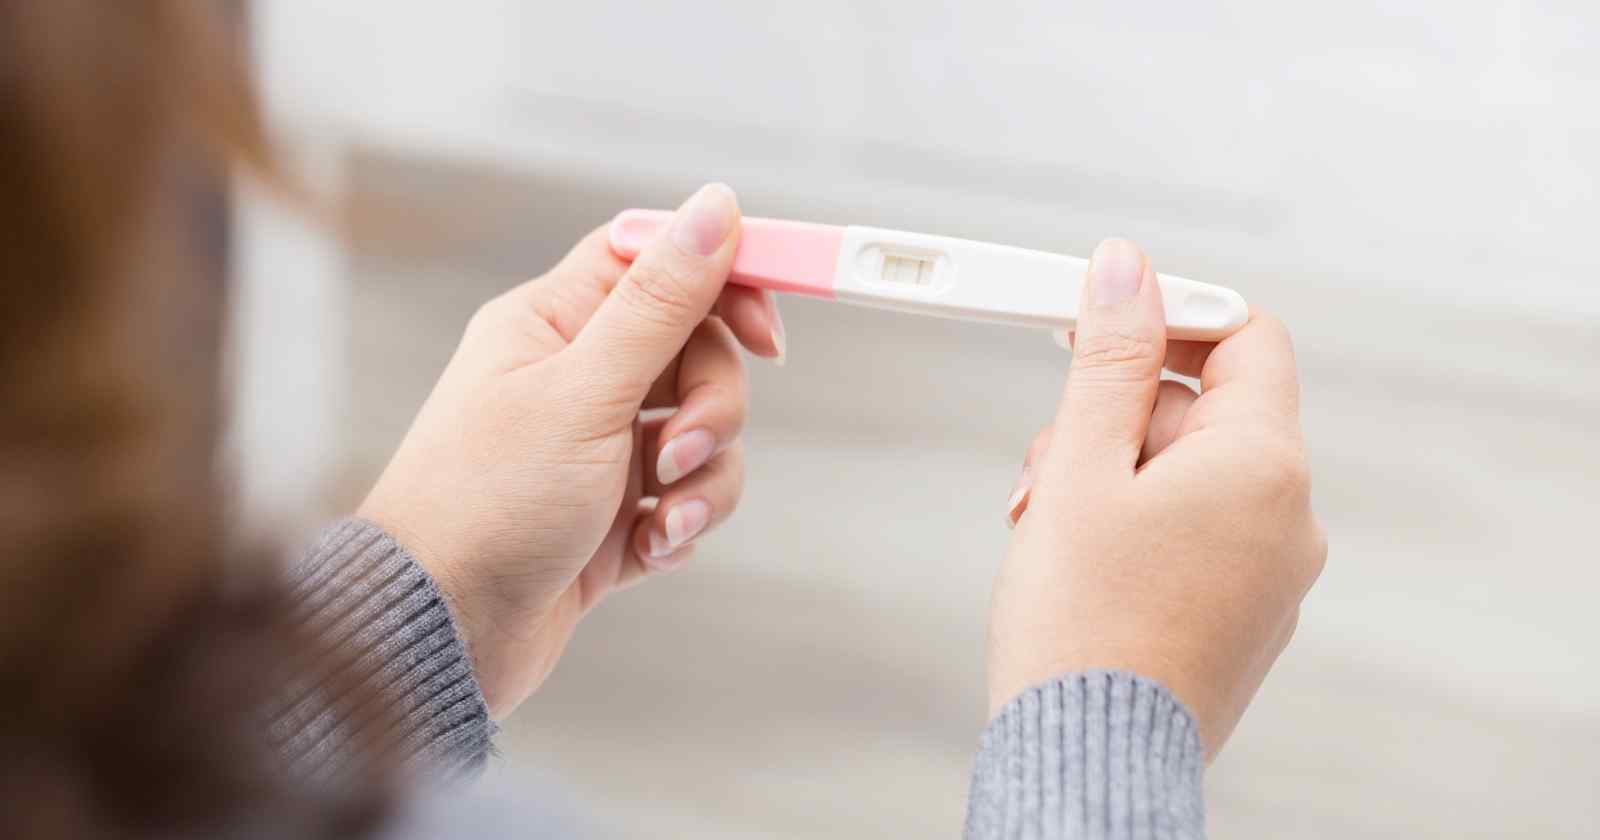 Wat betekent een negatieve uitslag van een zwangerschapstest?